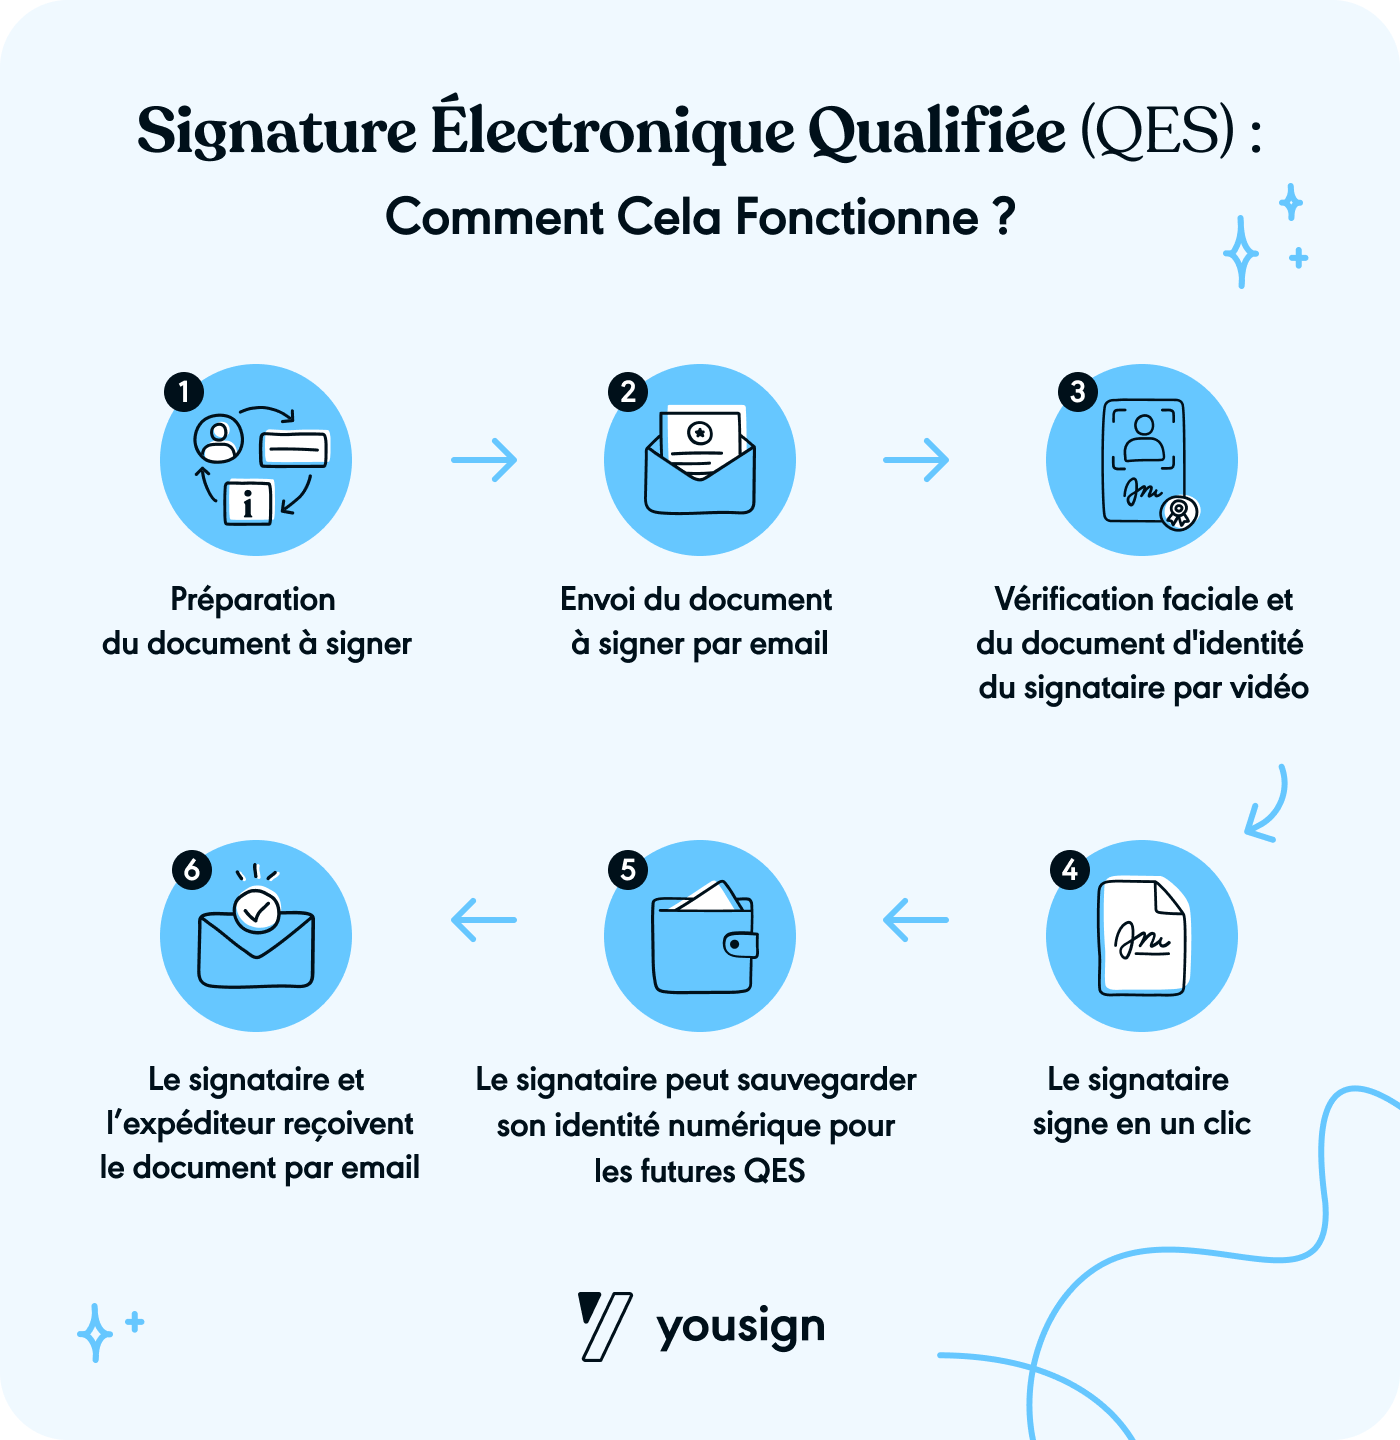 Fonctionnement de la signature électronique qualifiée (QES)